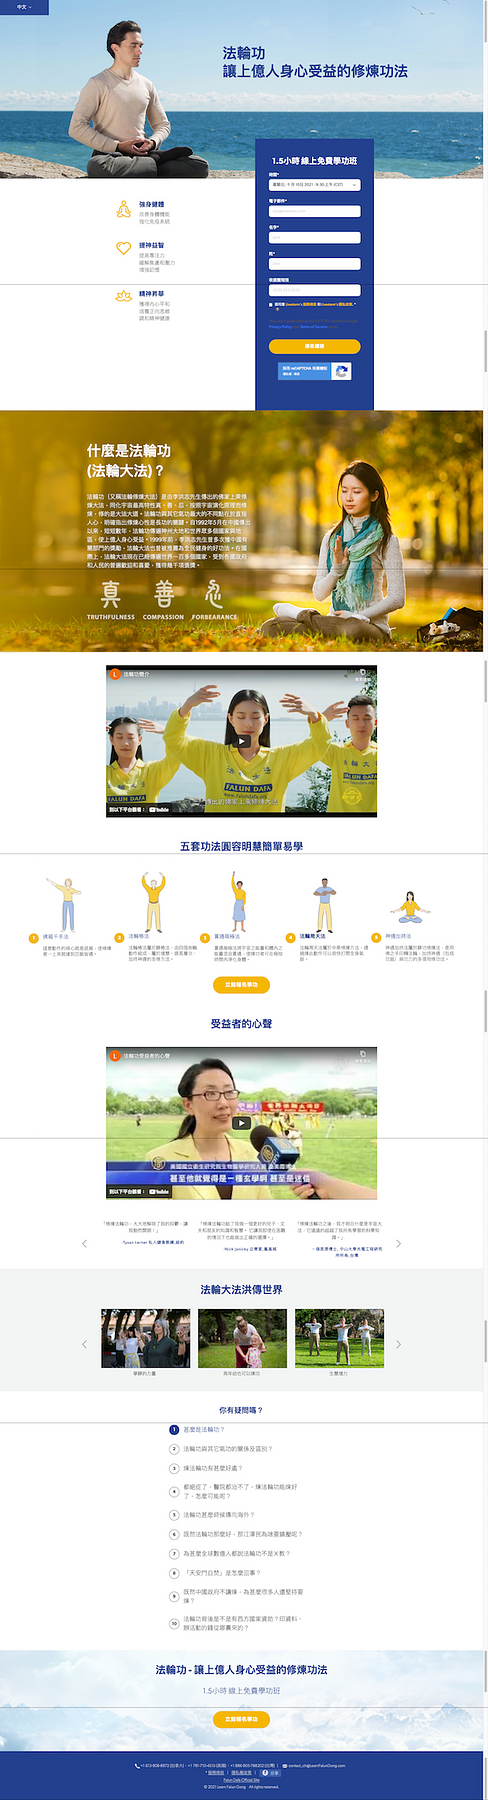 Ove godine pokrenuta je web stranica na kineskom jeziku za poučavanje Falun Dafa na internetu. Javnost je dobrodošla da se registrira i nauči ovu praksu uma i tijela.